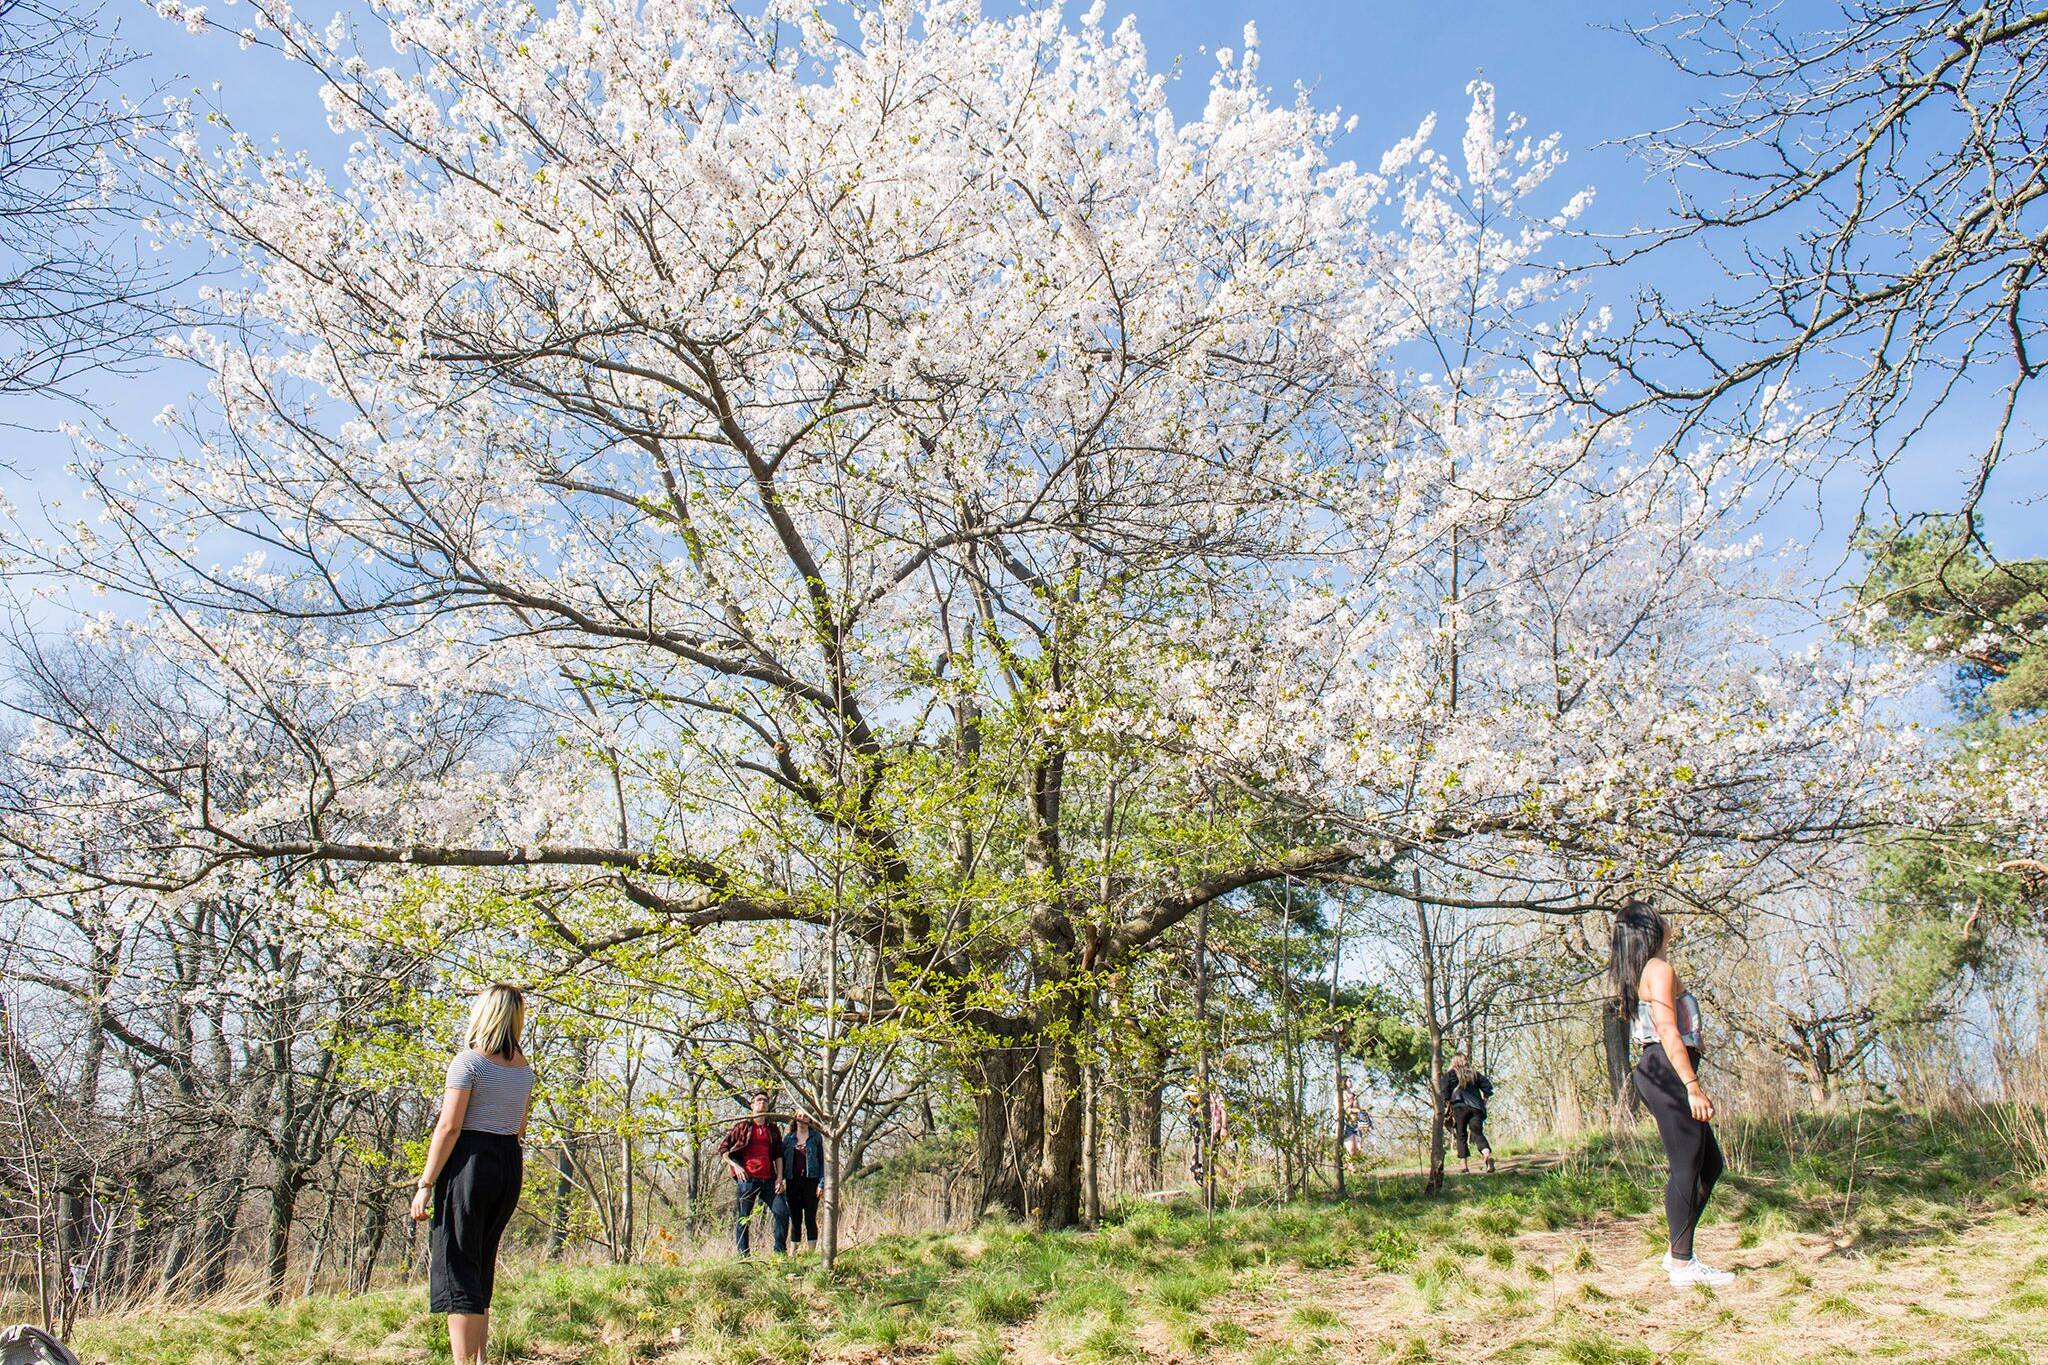 high park cherry blossom toronto 2021 dates